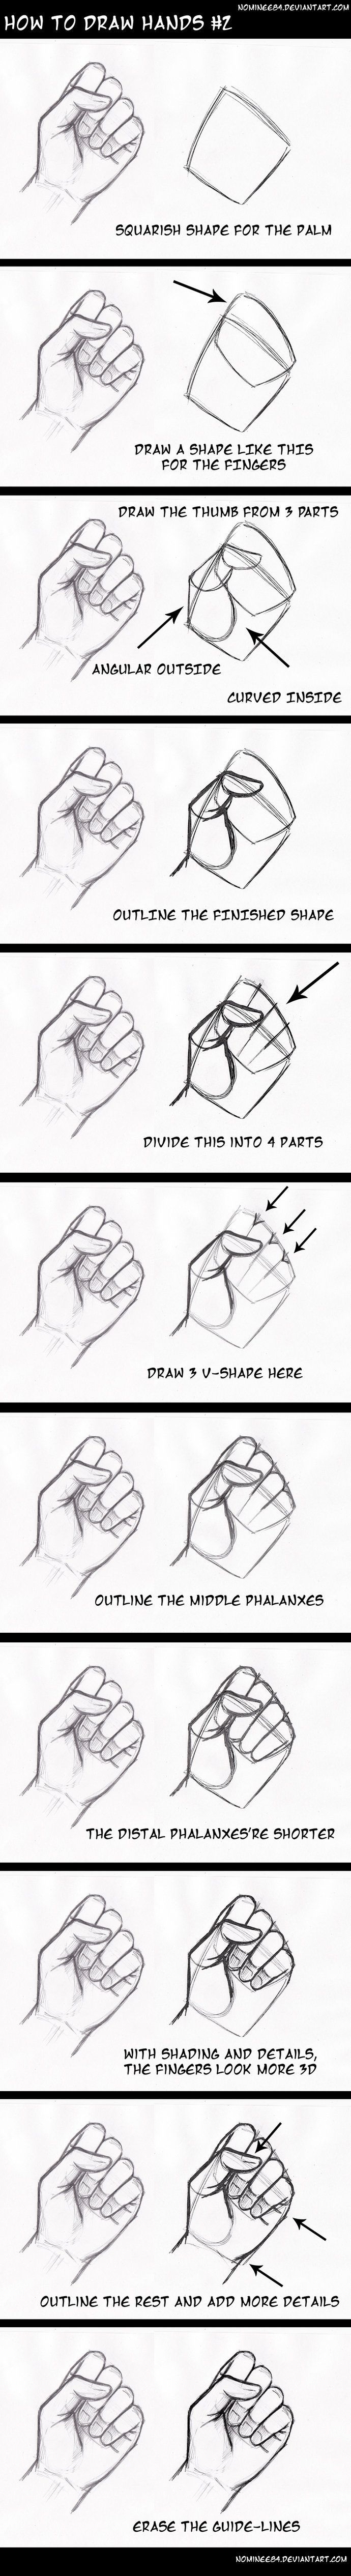 how to draw hands2 by nominee84 on DeviantArt. Es muy interesante. Mas tarde hare esta idea. Ya que nunca me salen bien las manos.